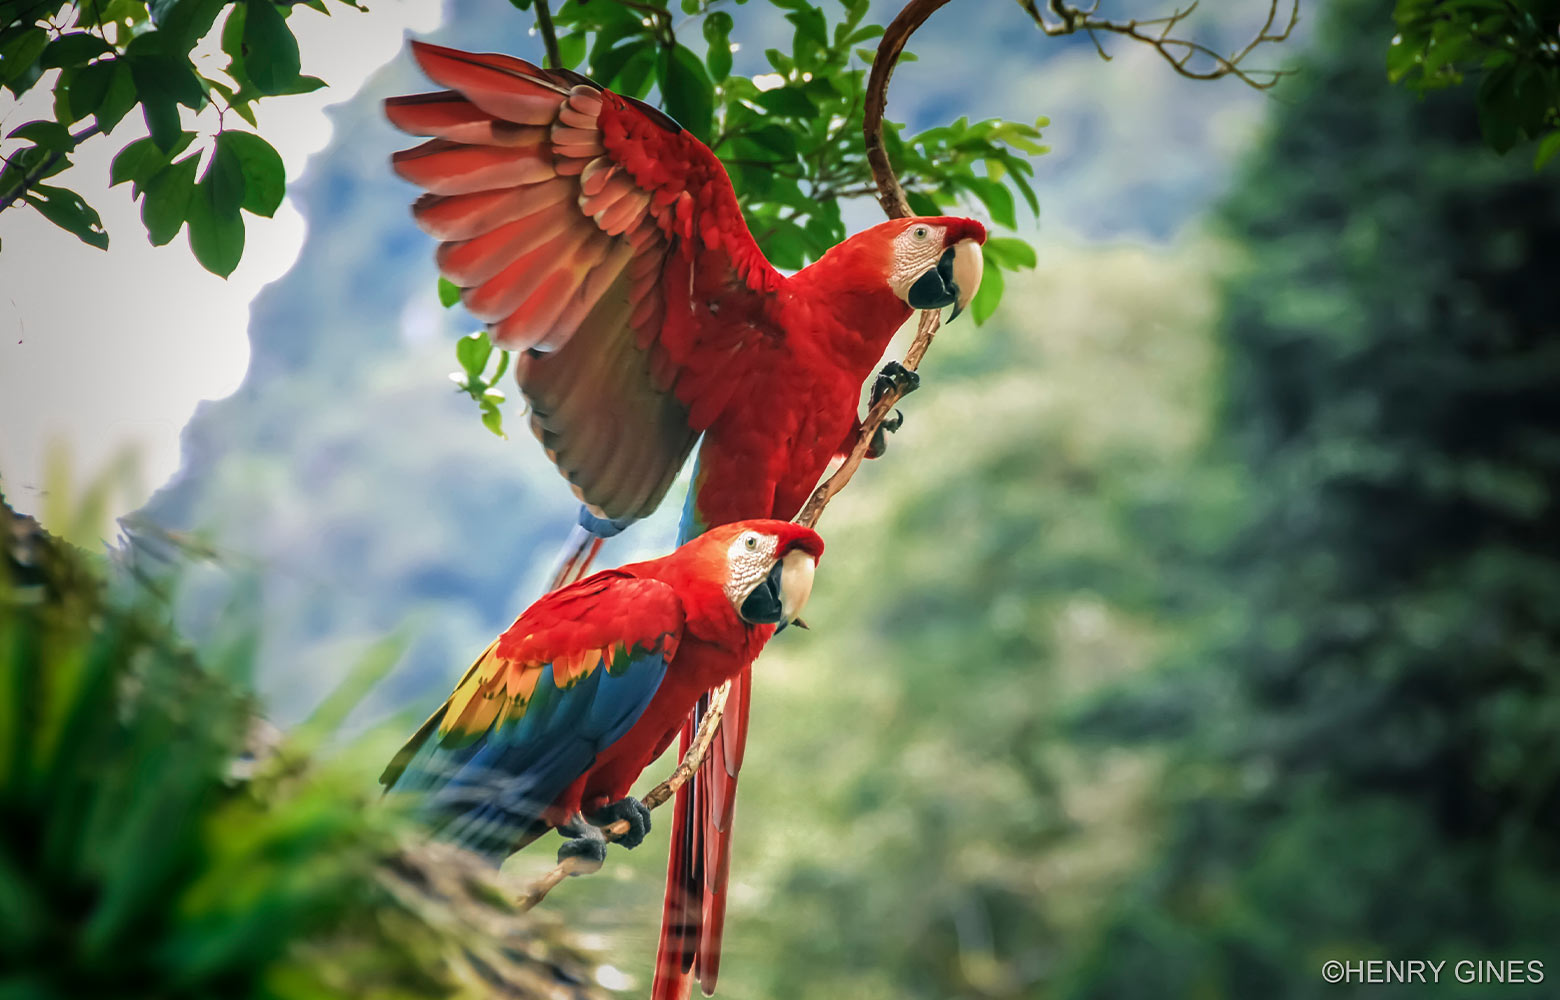 Mein Regenwald - Chancen für den tropischen Regenwald im peruanischen Amazonasgebiet